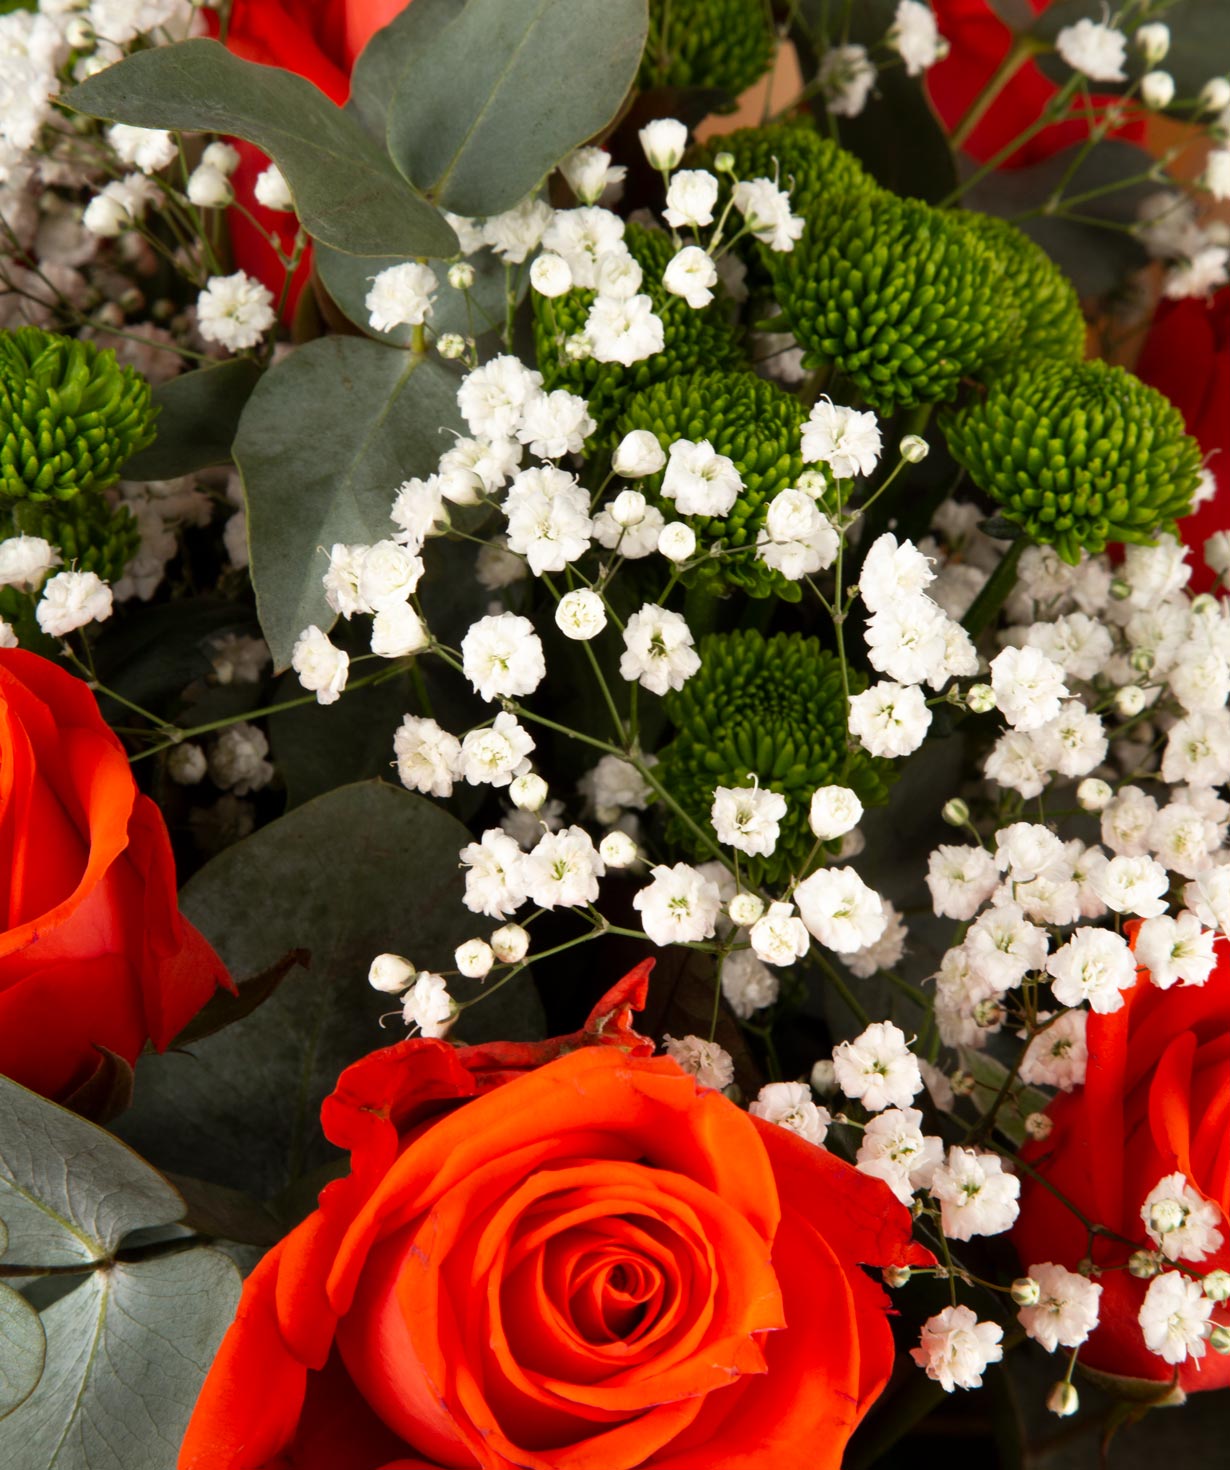 Ծաղկեփունջ «Լիդա» վարդերով, քրիզանթեմներով և գիպսաֆիլաներով